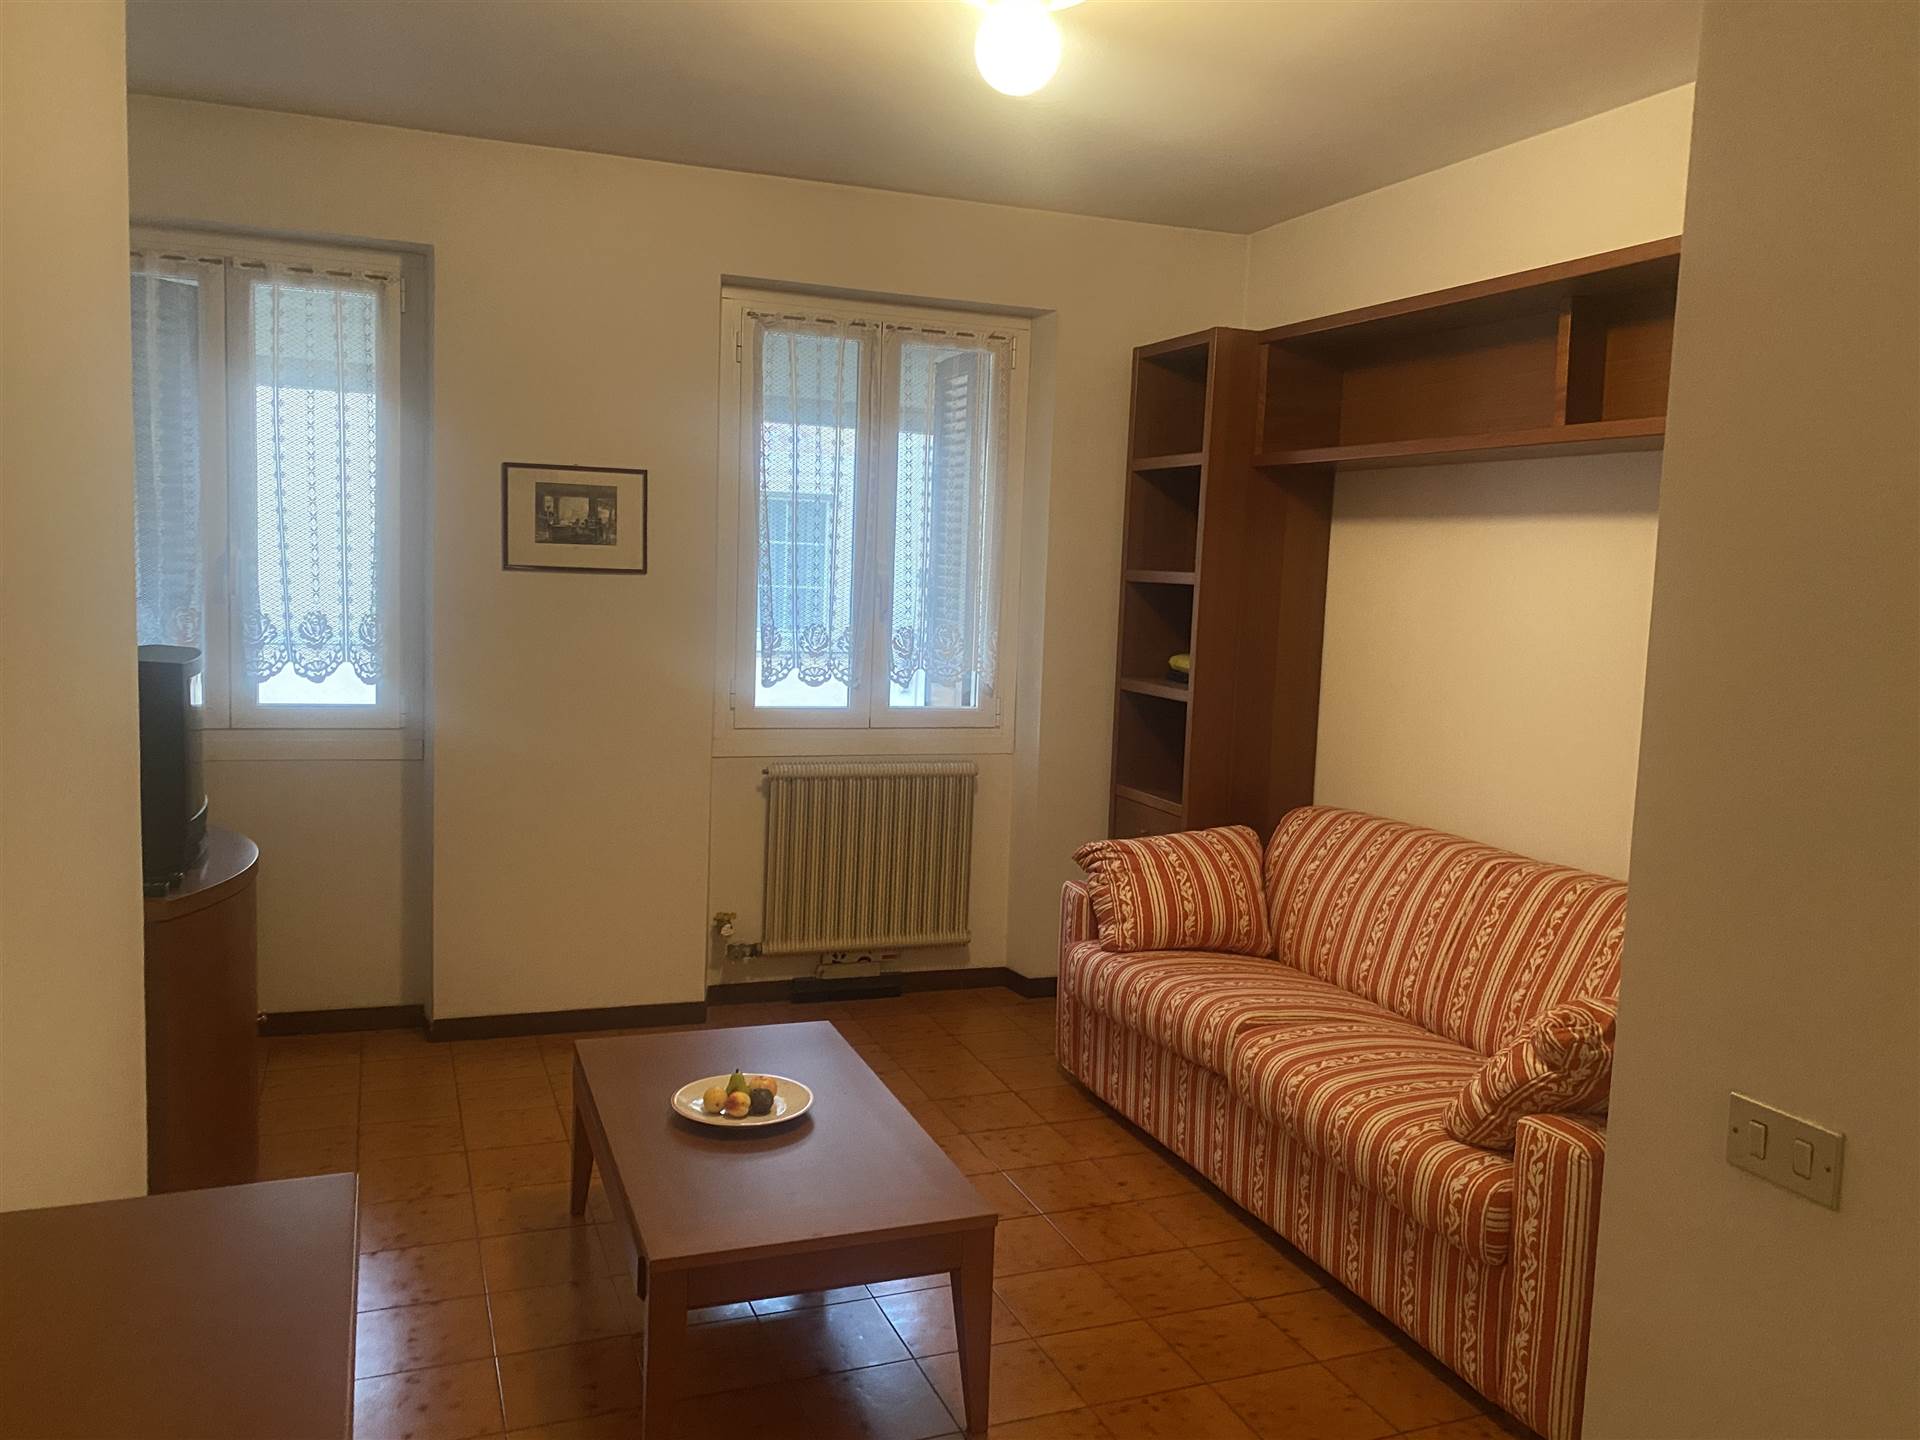 Zum Verkauf in Gardone Riviera, bieten wir eine Ein-Zimmer-Wohnung, bestehend aus einer Eingangshalle, Kochnische und ein großes Wohnzimmer, befindet 